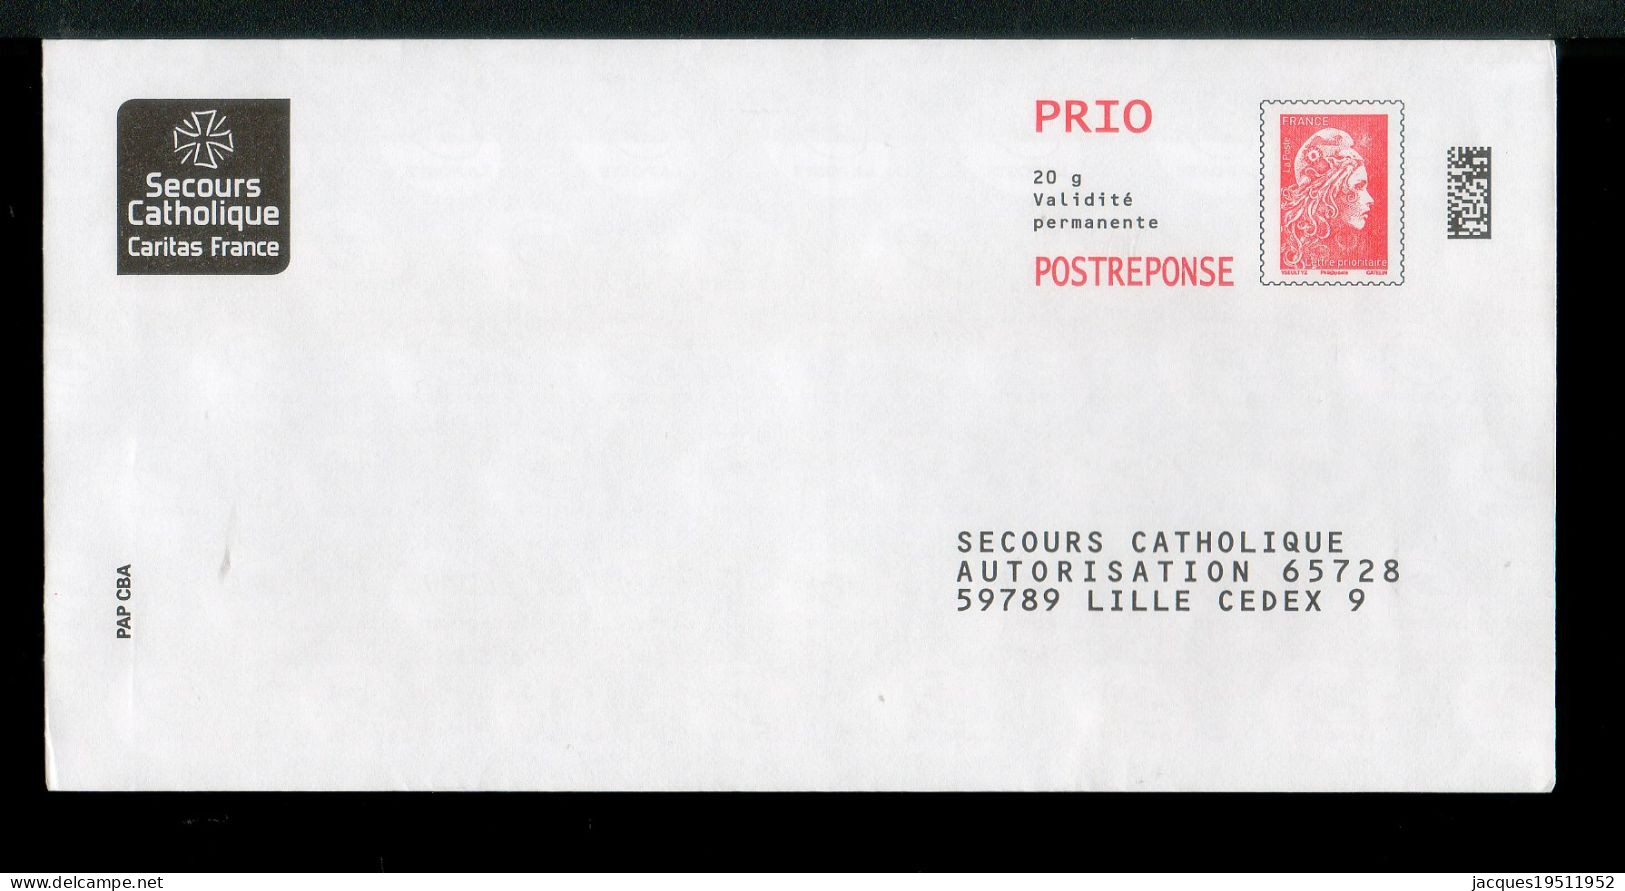 NJ-180 - Yzeult YZ (PRIO) - Secours Catholique - N° 232063 - Prêts-à-poster:Answer/Marianne L'Engagée